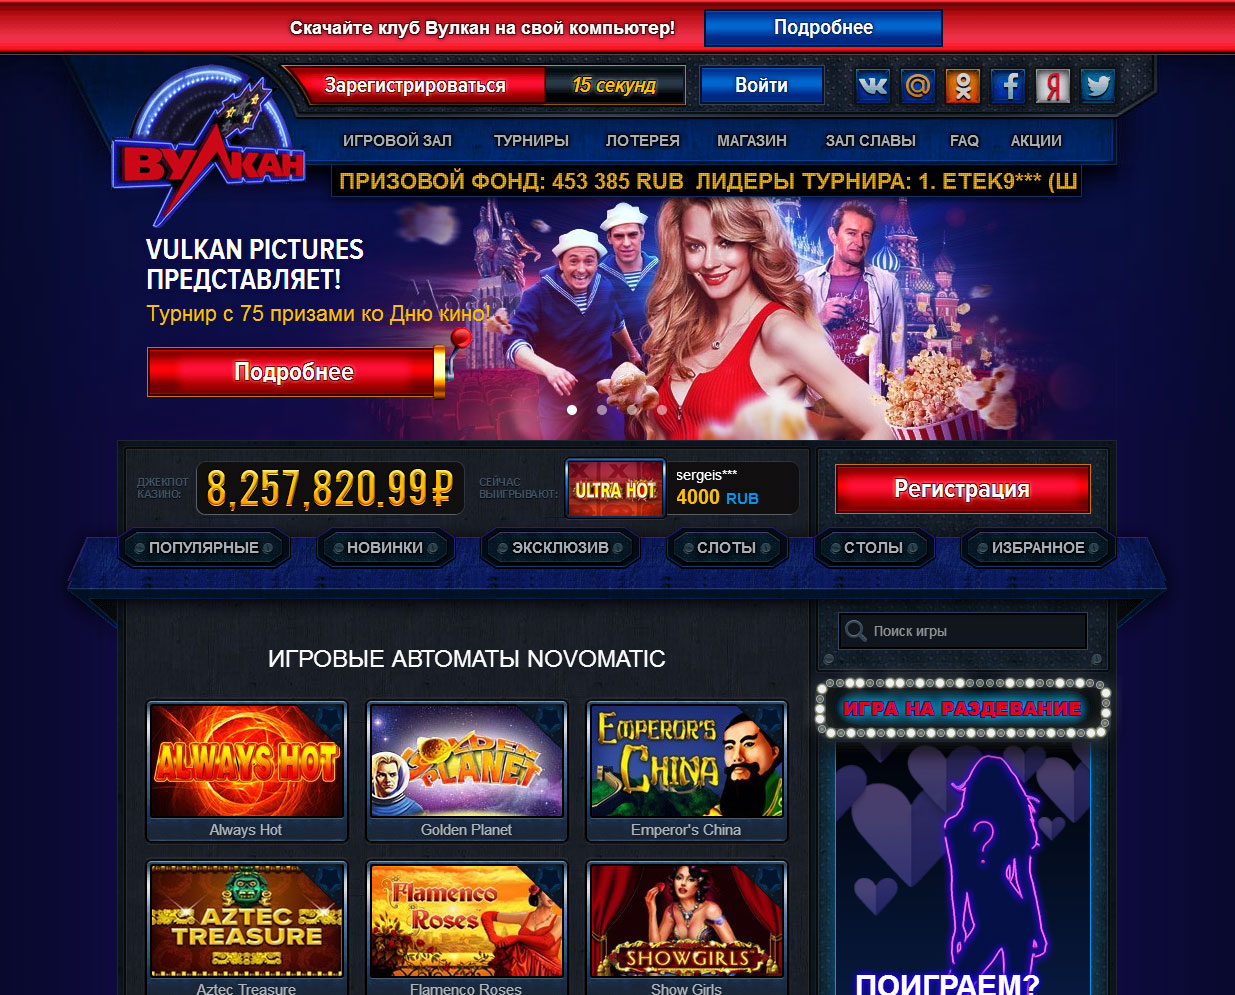 Официальный сайт казино Вулкан Россия kazino-vulkan.bitbucket.io и его особенности